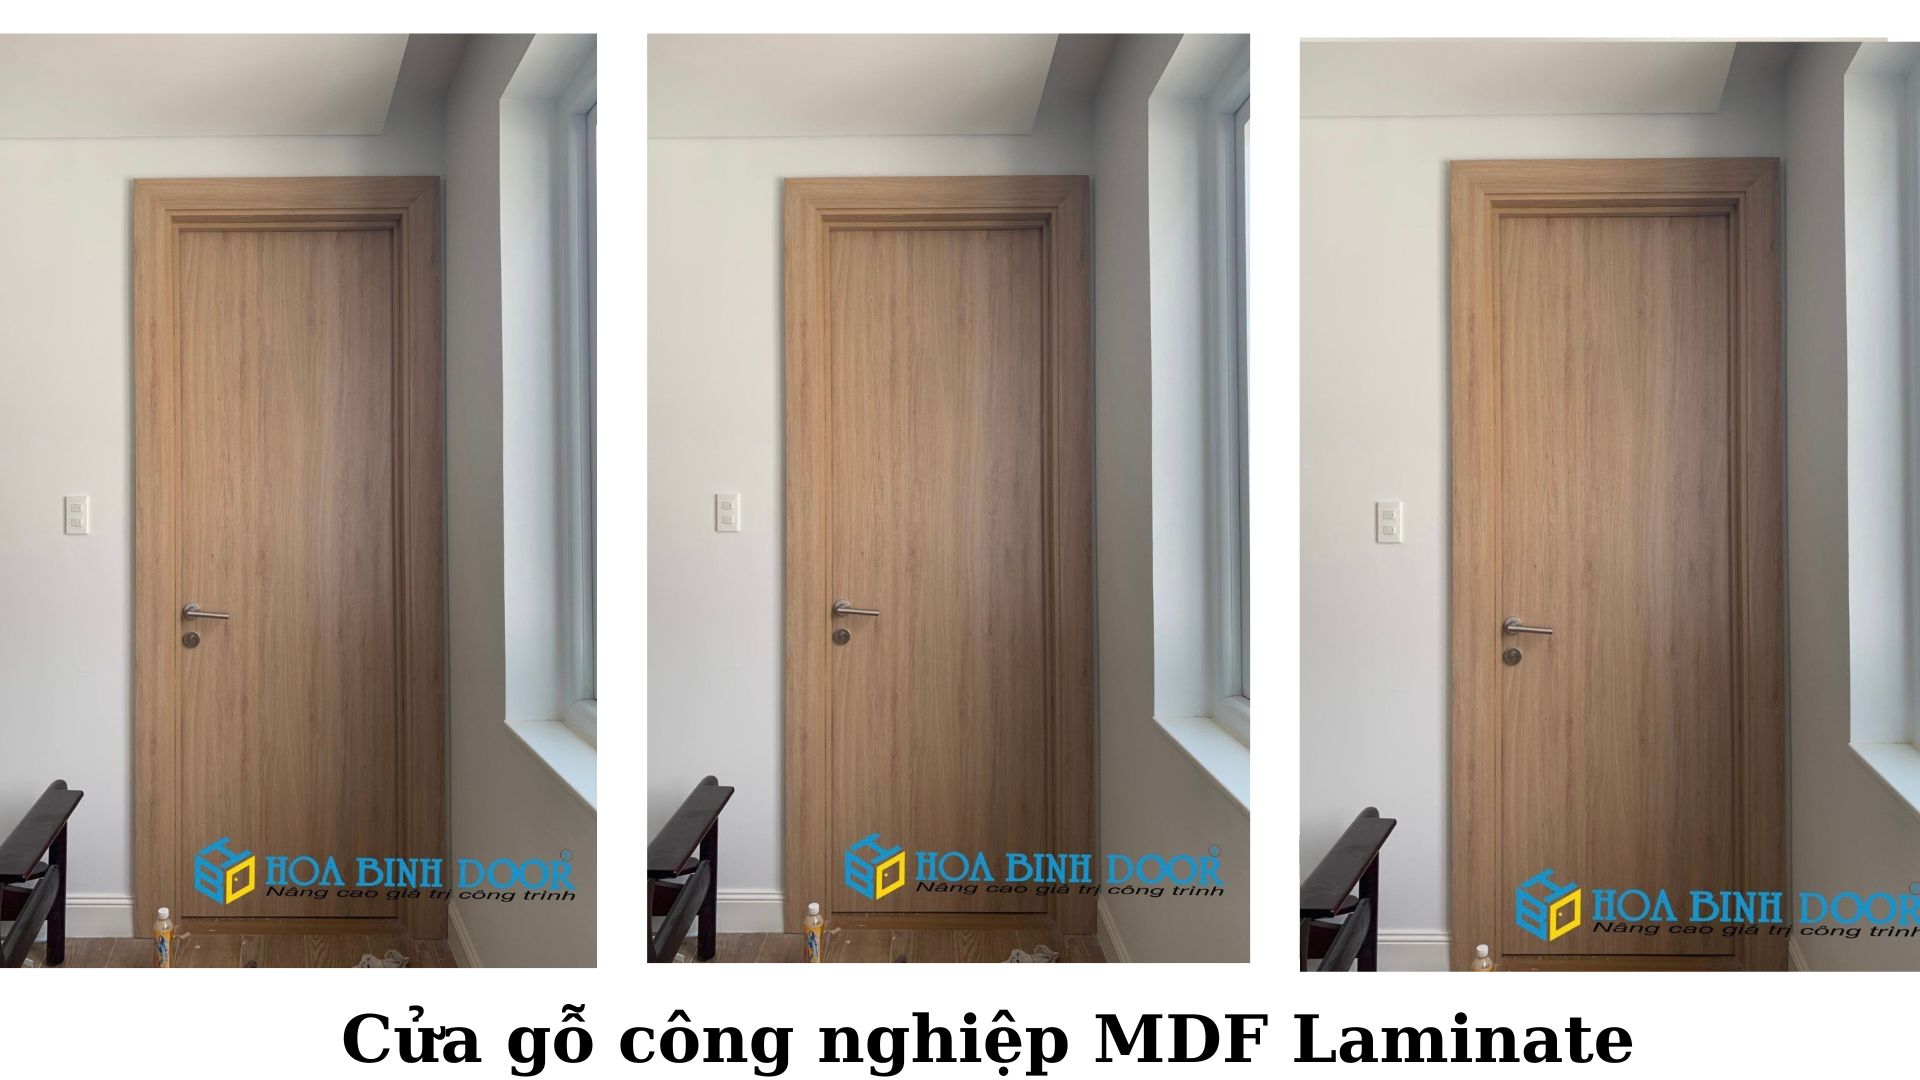 Cửa MDF Laminate tại Quận 8